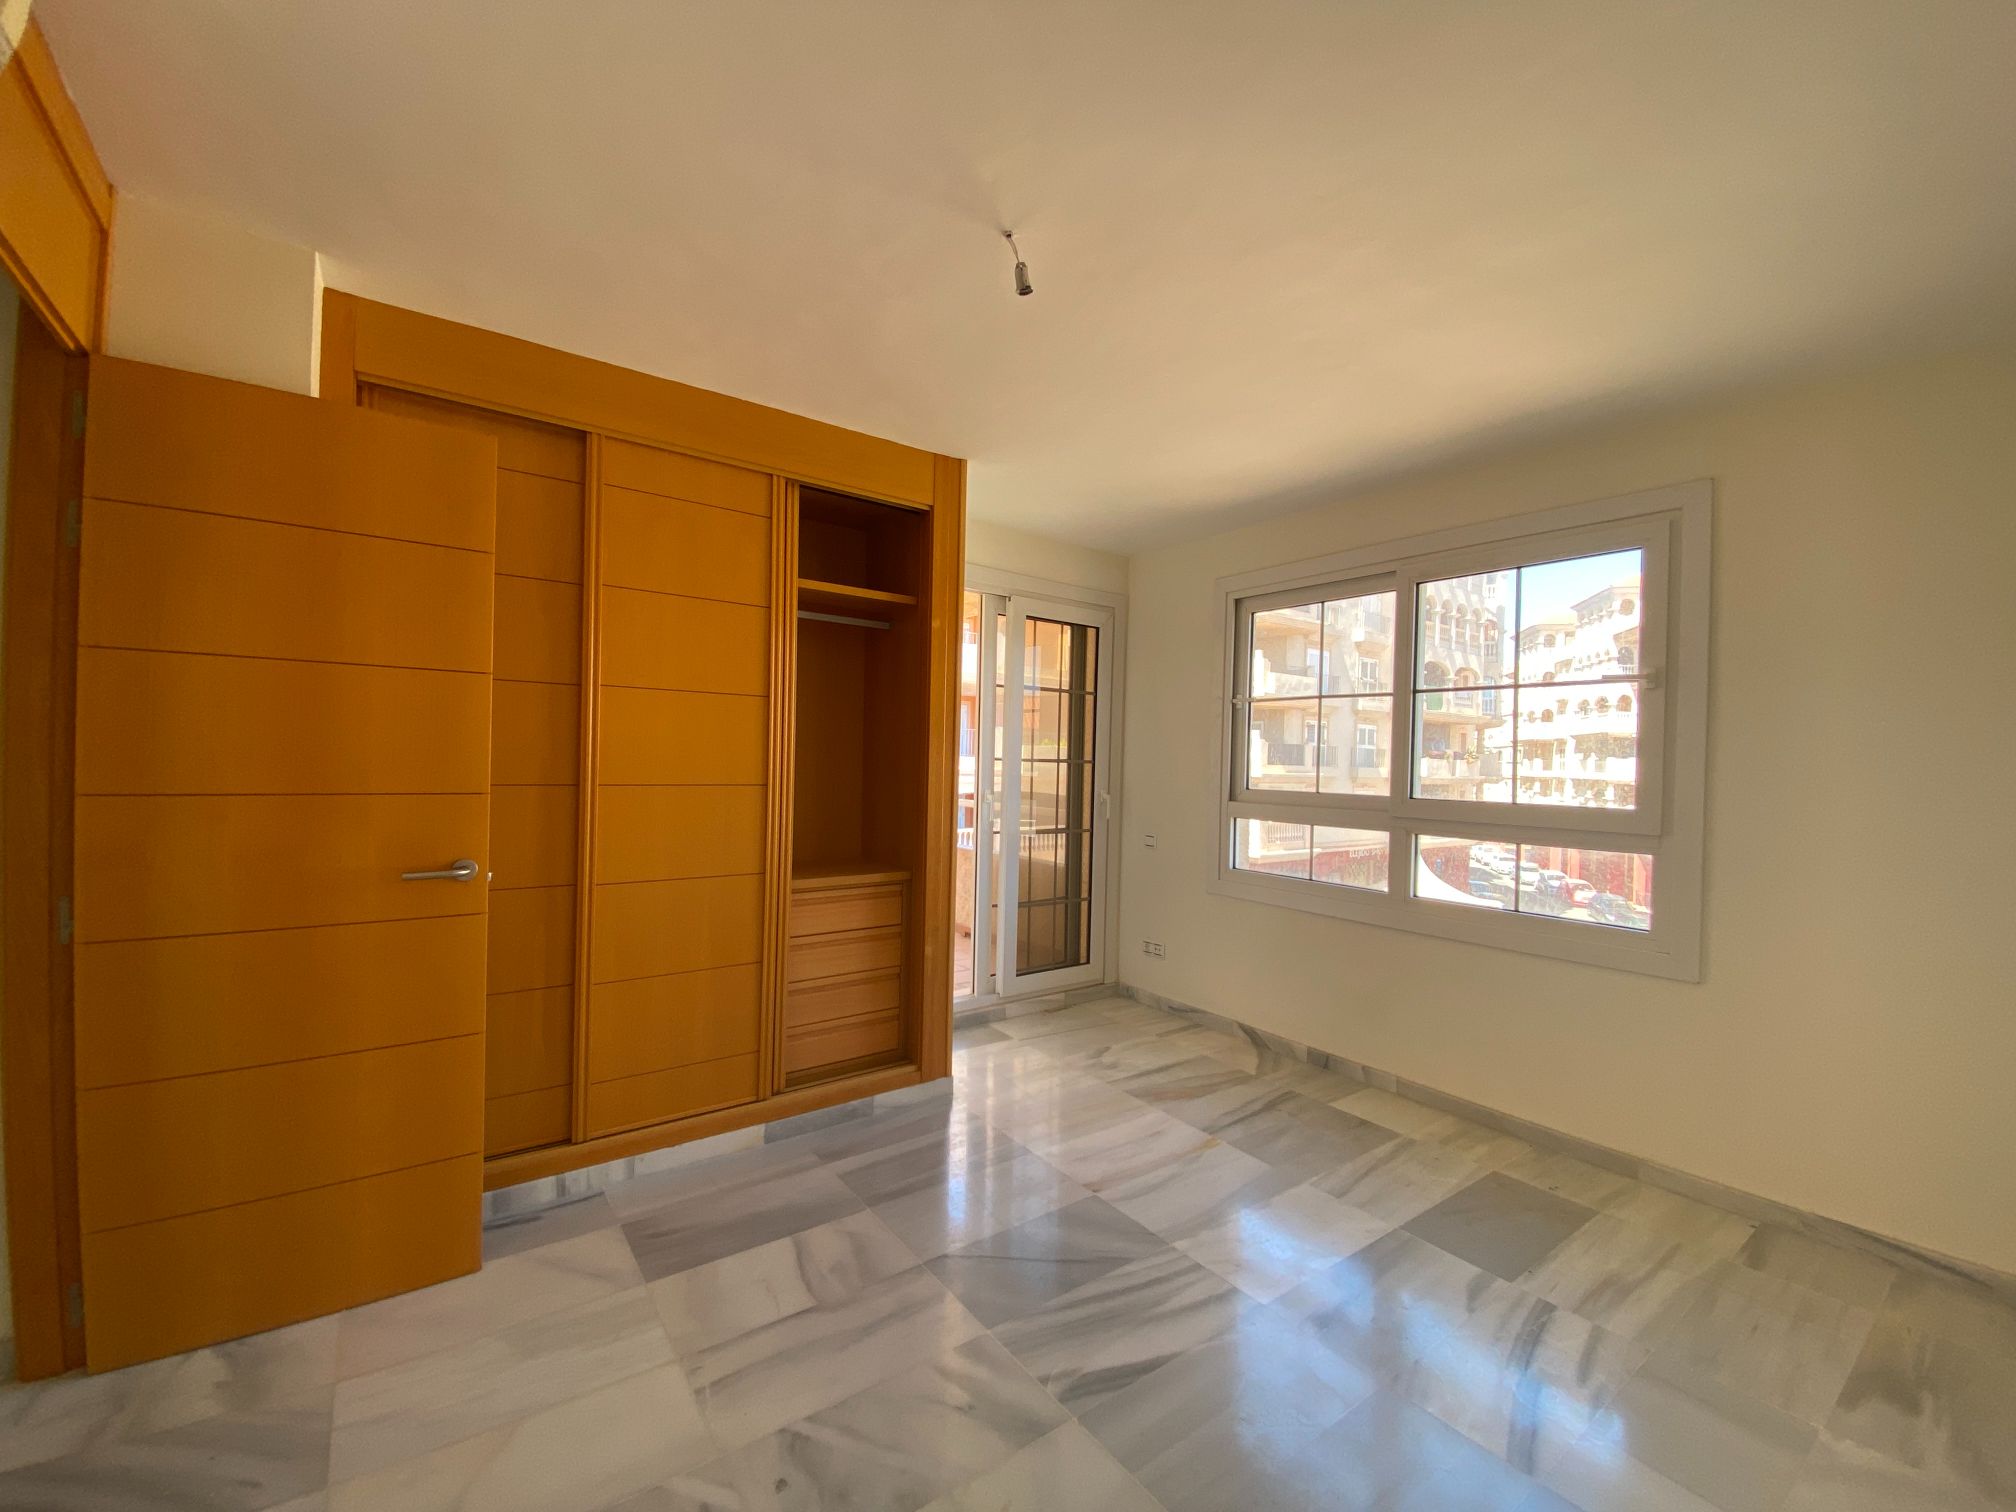 Apartment for sale in Almerimar and El Ejido 41